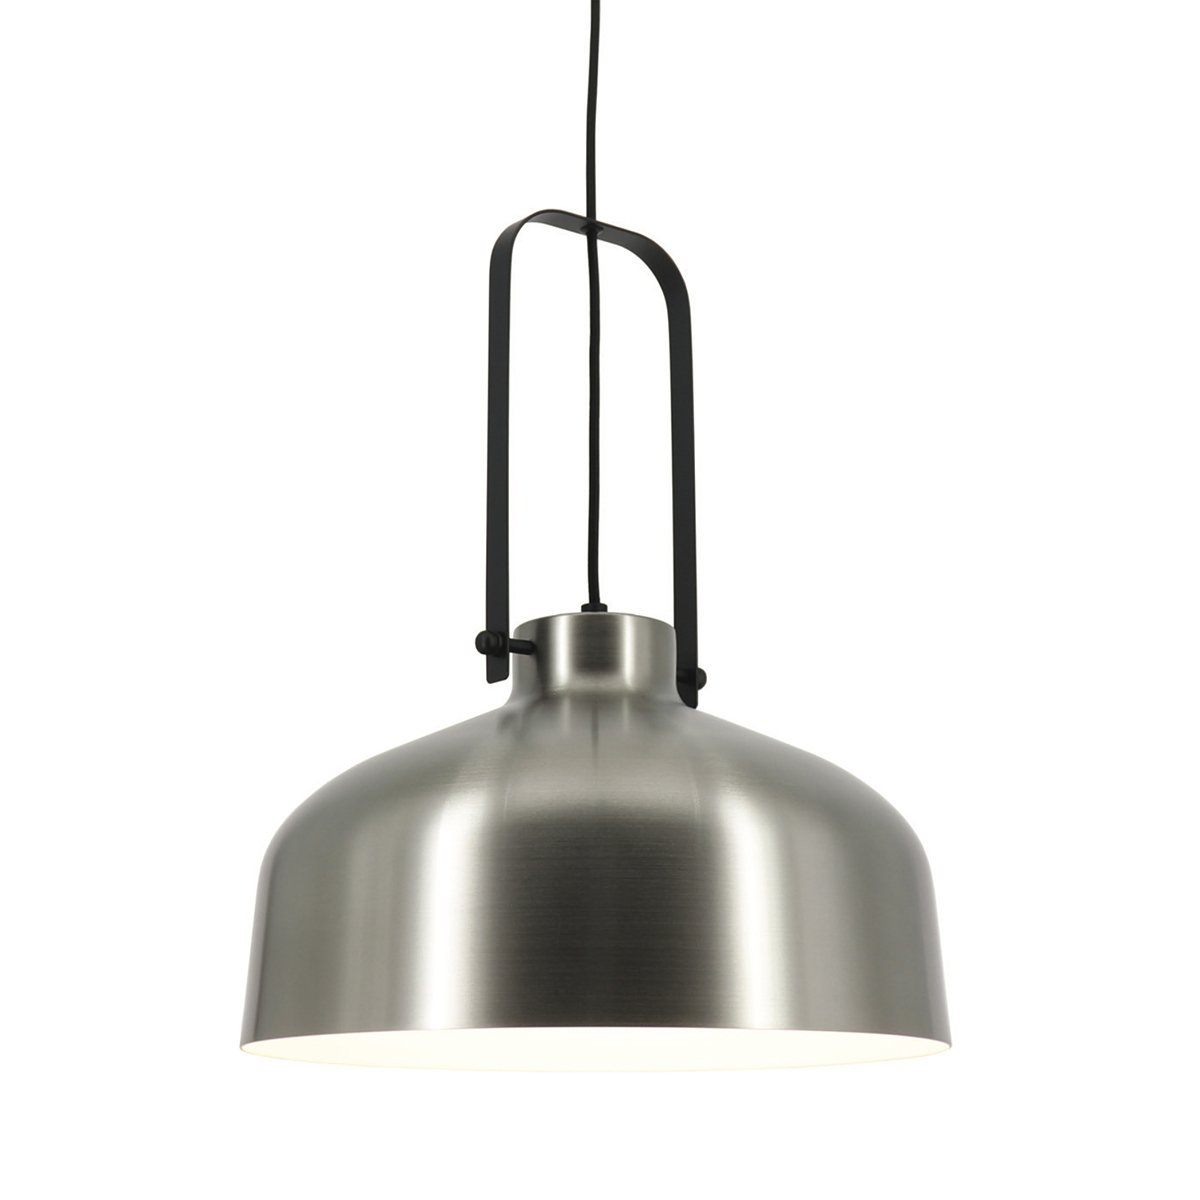 Lampe d'usine industriel métal Vaglia - Ø 37.5 cm